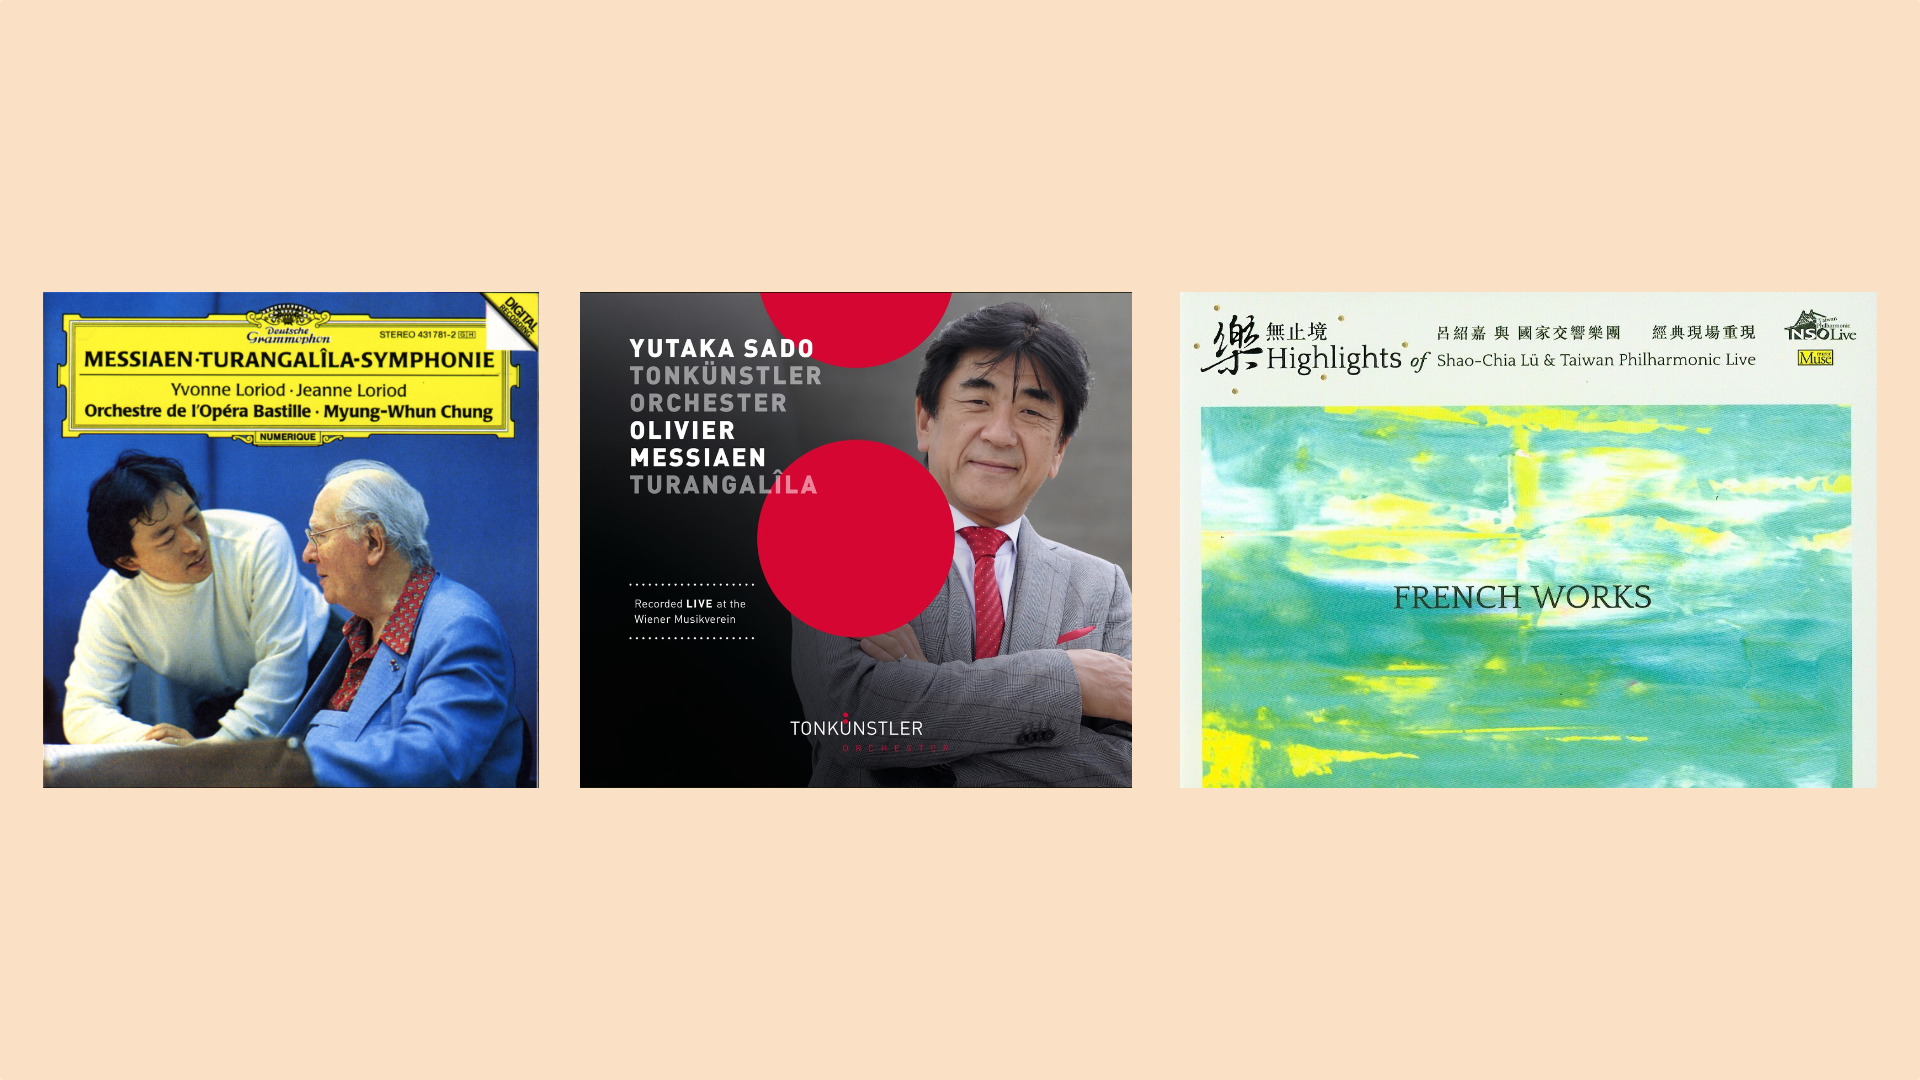 梅湘《圖倫加利拉交響曲》的三個錄音